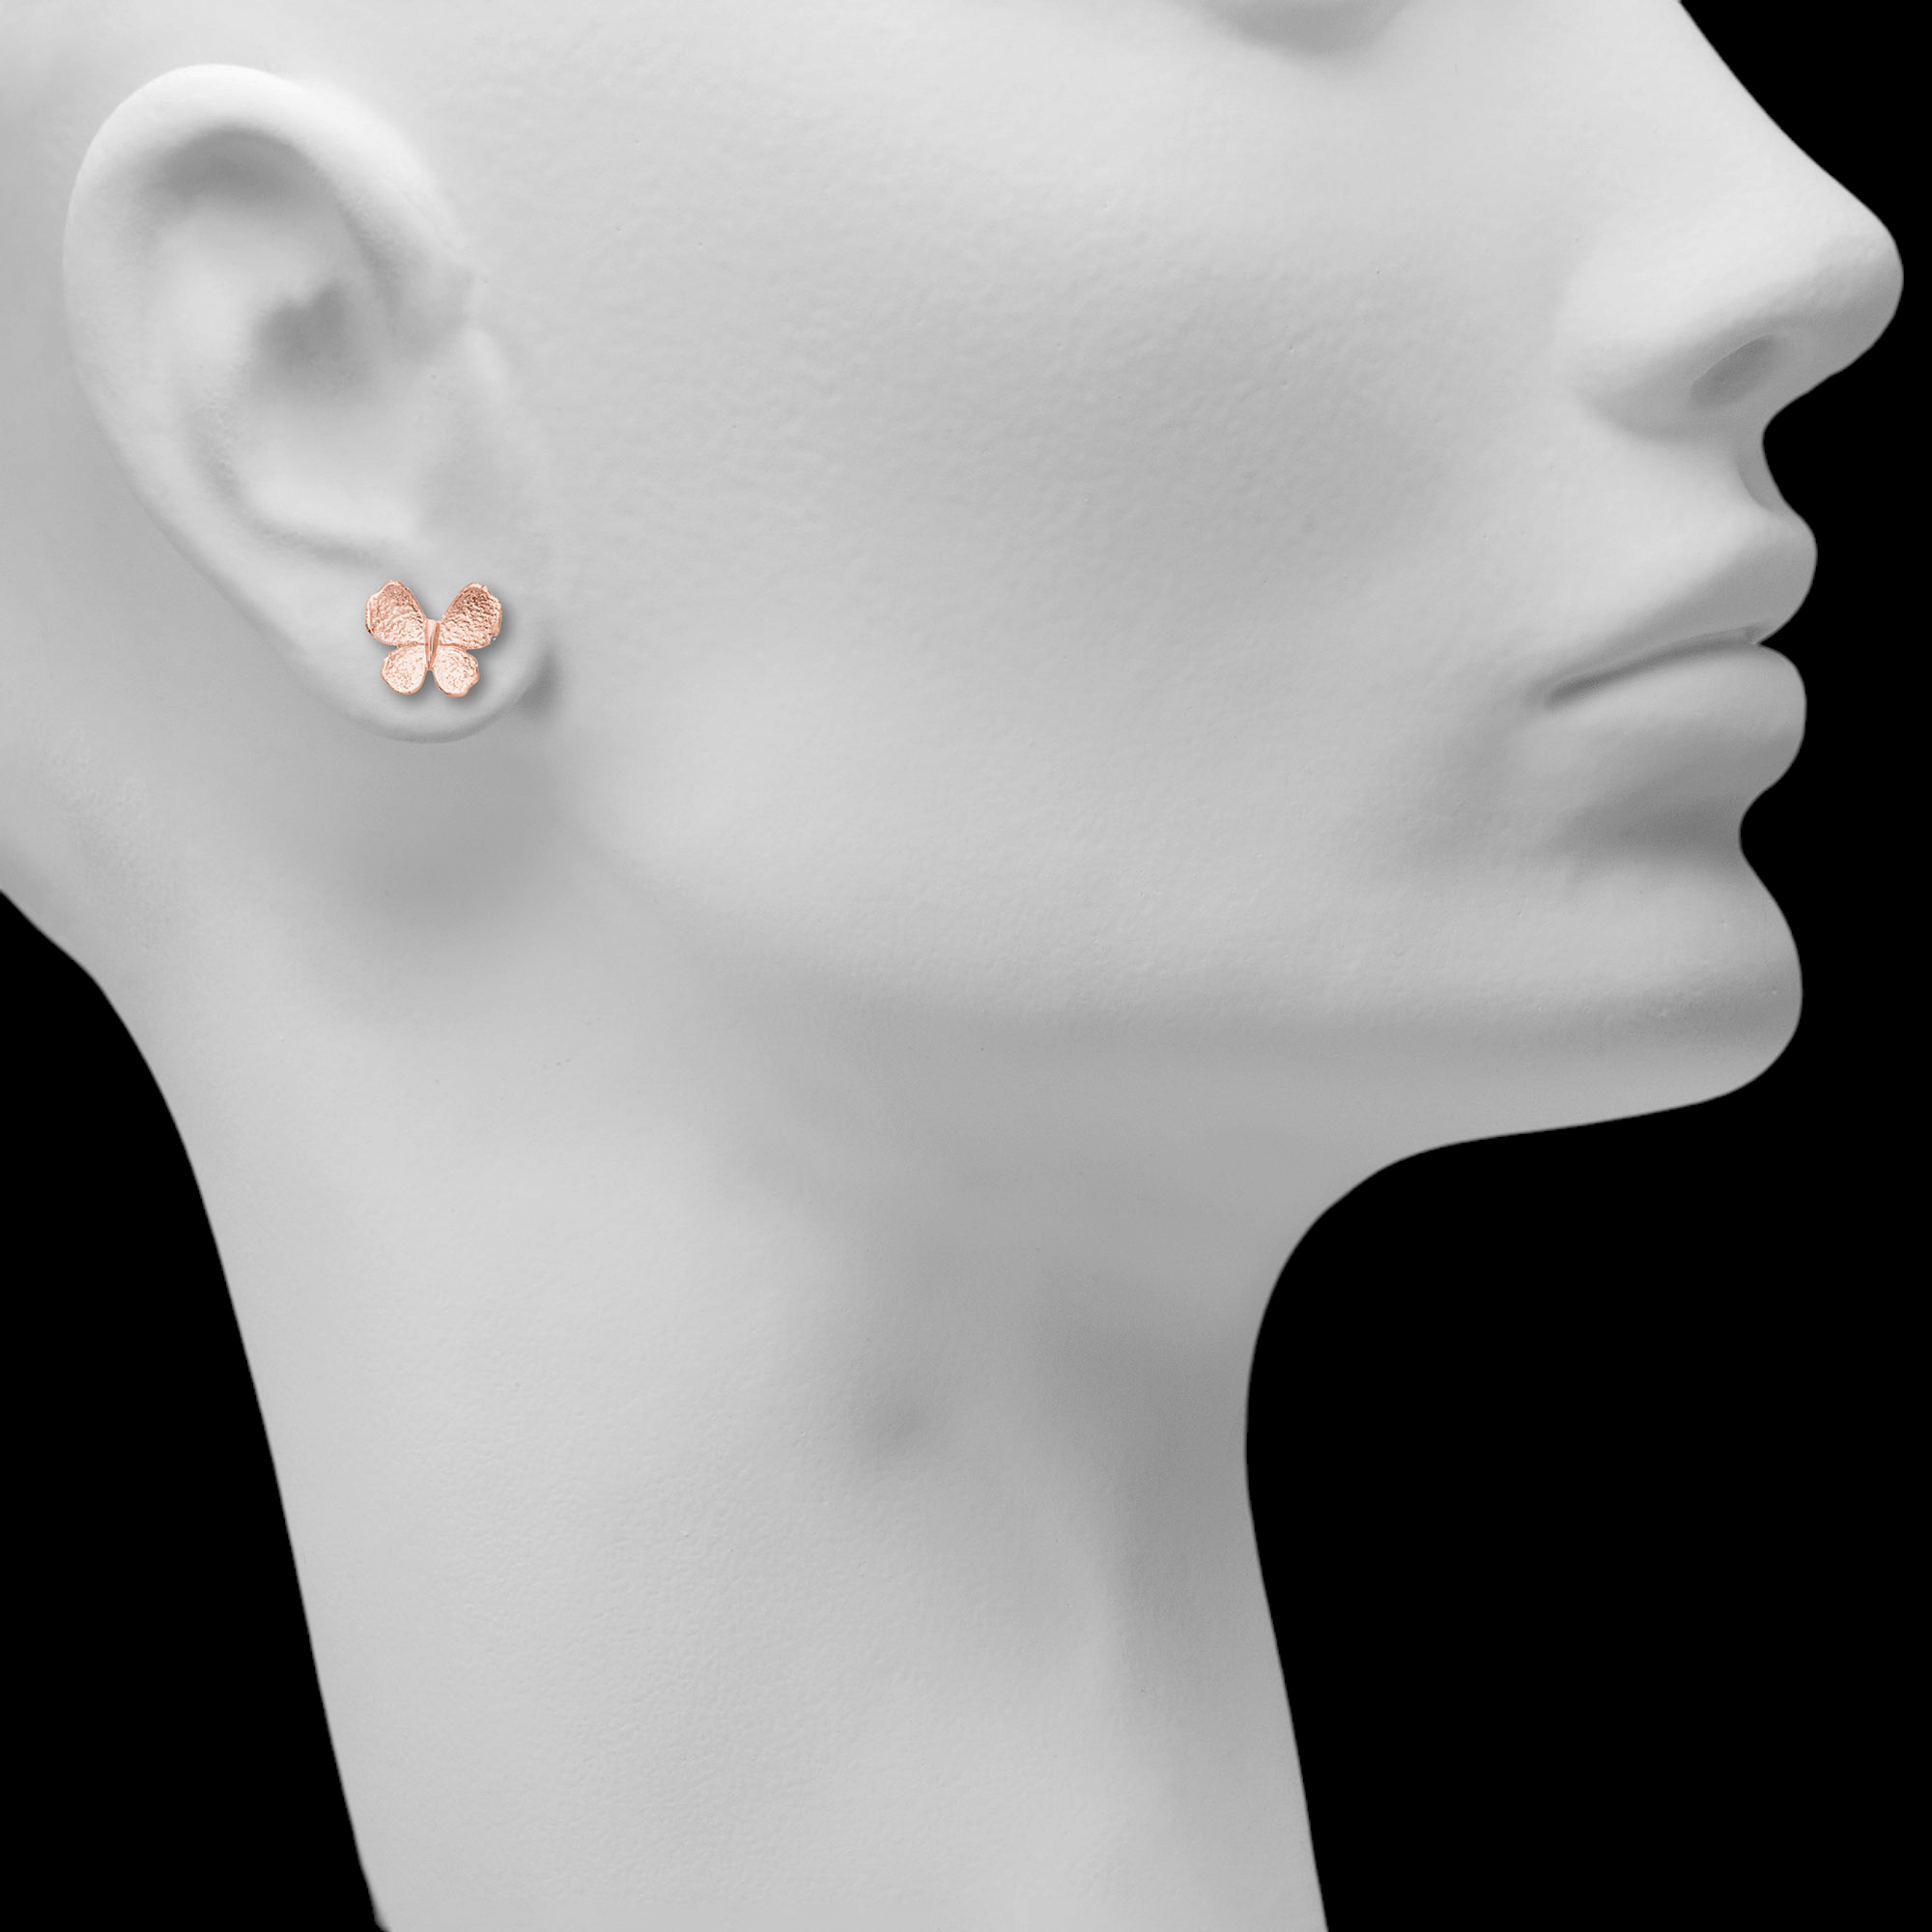 Mini vlinder oorbellen in rosé